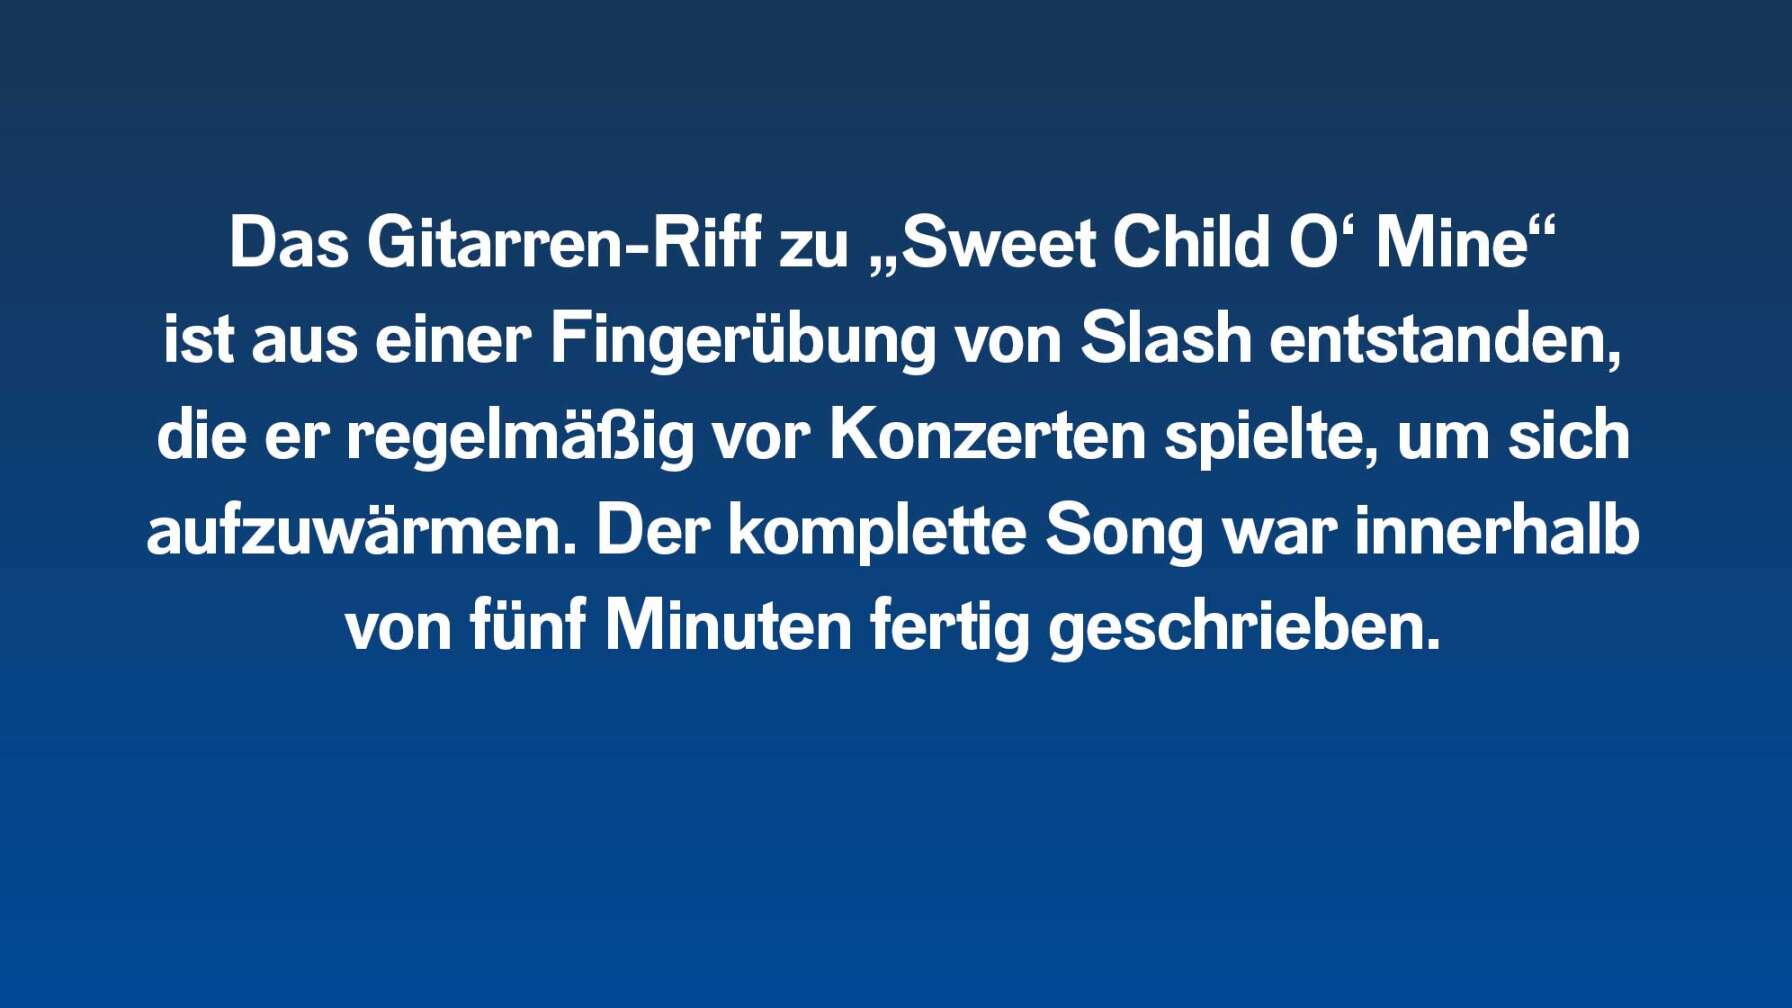 Das Gitarren-Riff zu „Sweet Child O‘ Mine“ ist aus einer Fingerübung von Slash entstanden, die er regelmäßig vor Konzerten spielte, um sich aufzuwärmen. Der komplette Song war innerhalb von fünf Minuten fertig geschrieben.